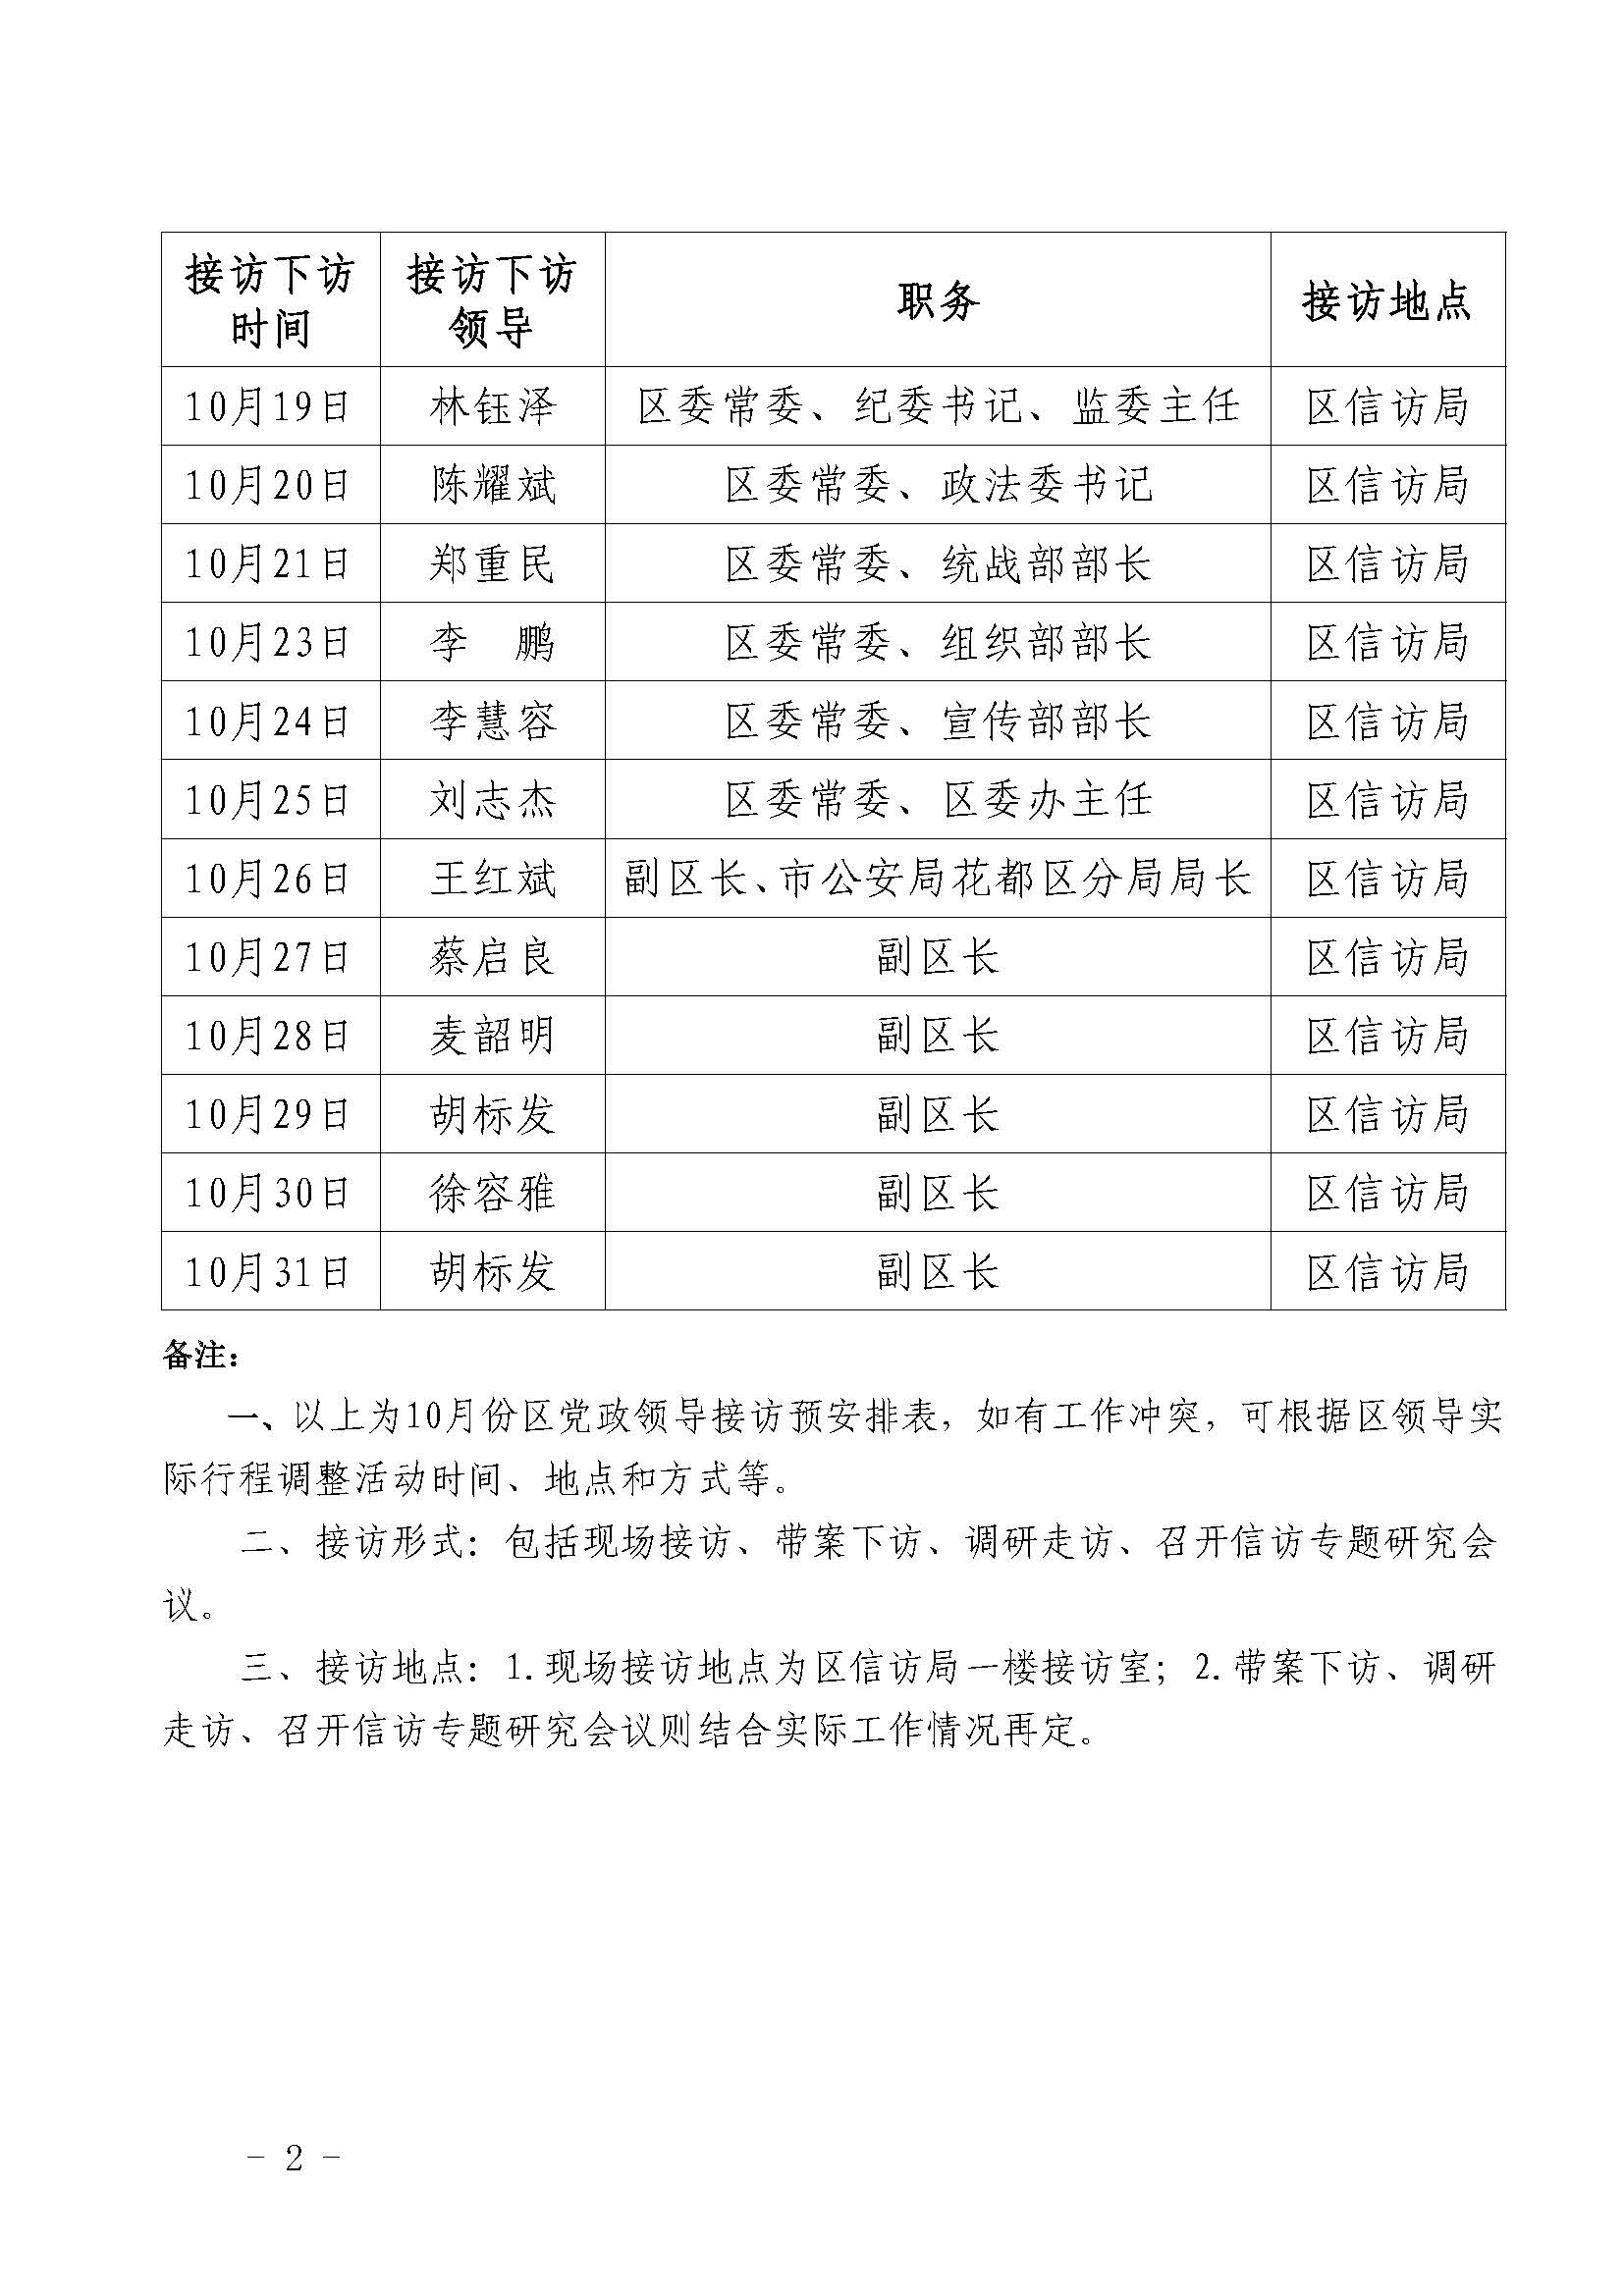 2022年10月花都区党政领导干部接访下访（调研）活动安排表 (2).jpg